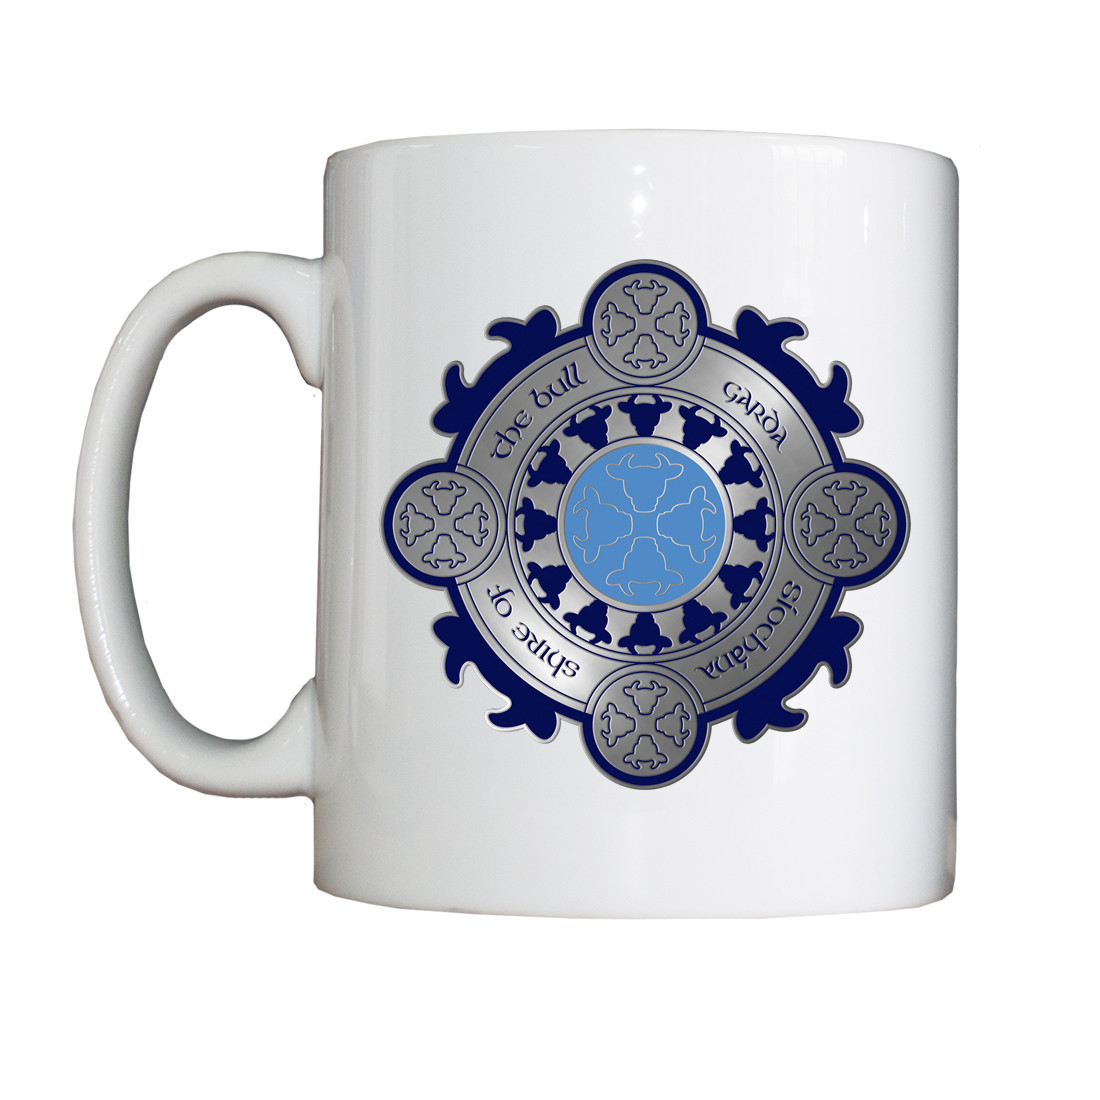 Personalised 'Bullshire Garda' Drinking Vessel (Mug)